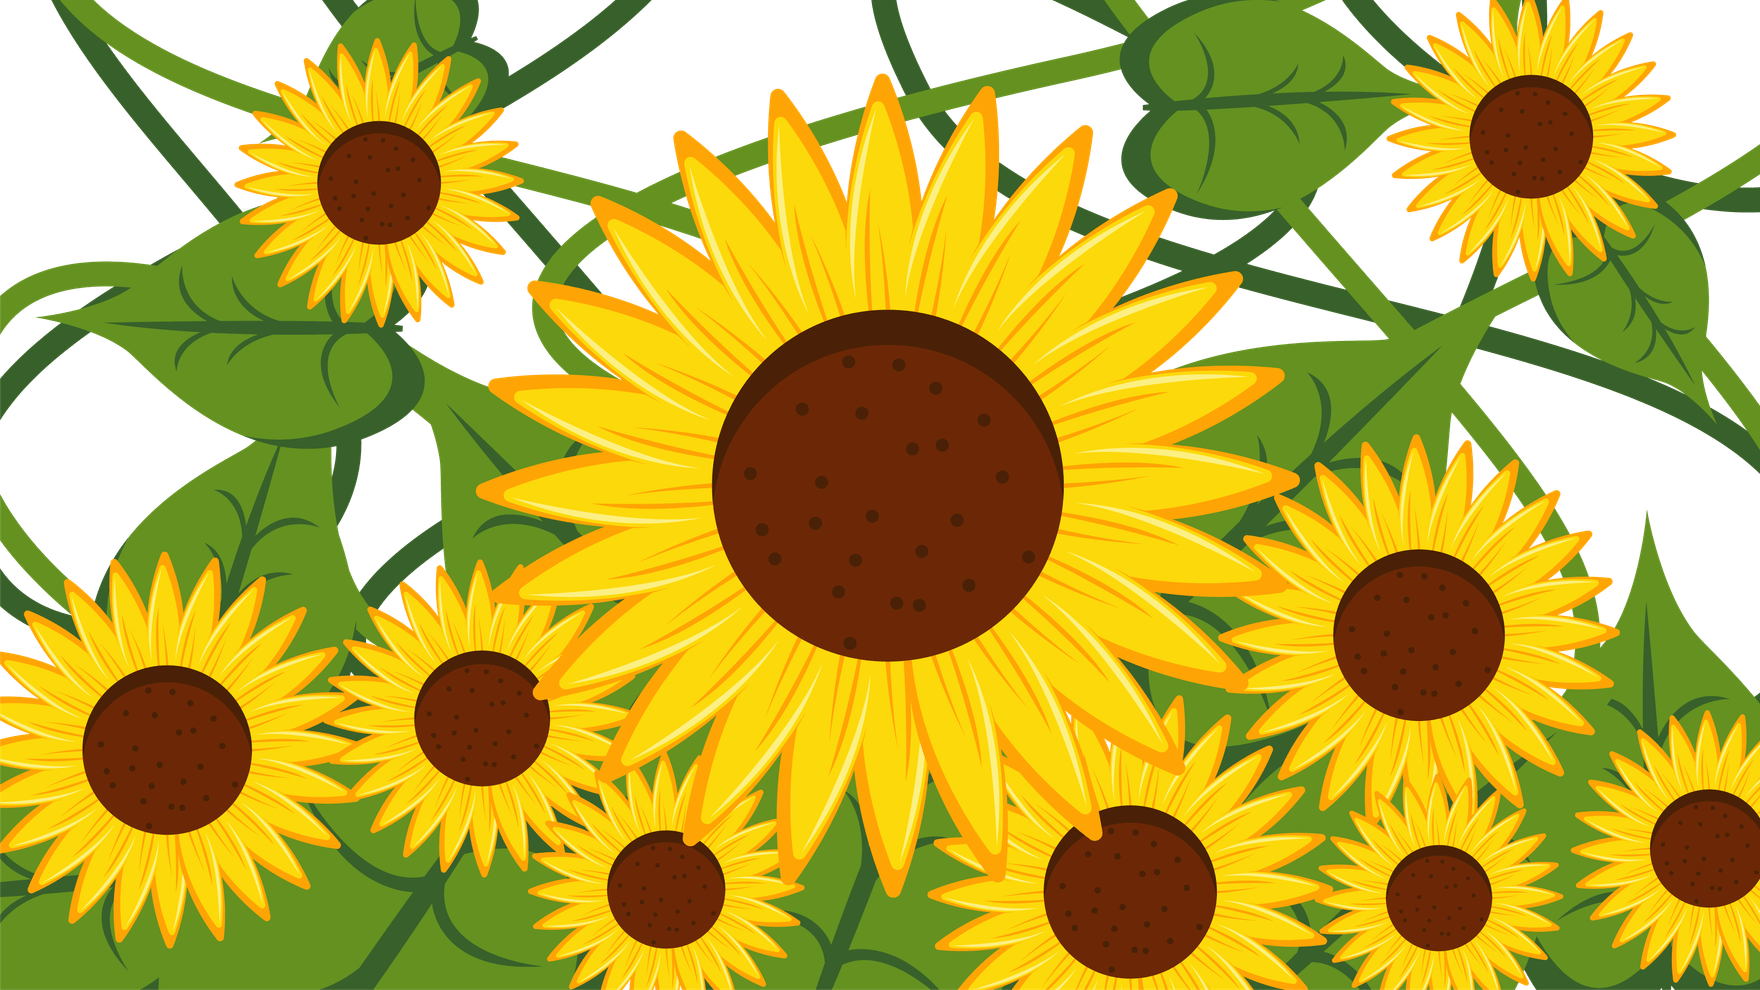 Free Sunflower Transparent Background in Illustrator, EPS, SVG, JPG, PNG